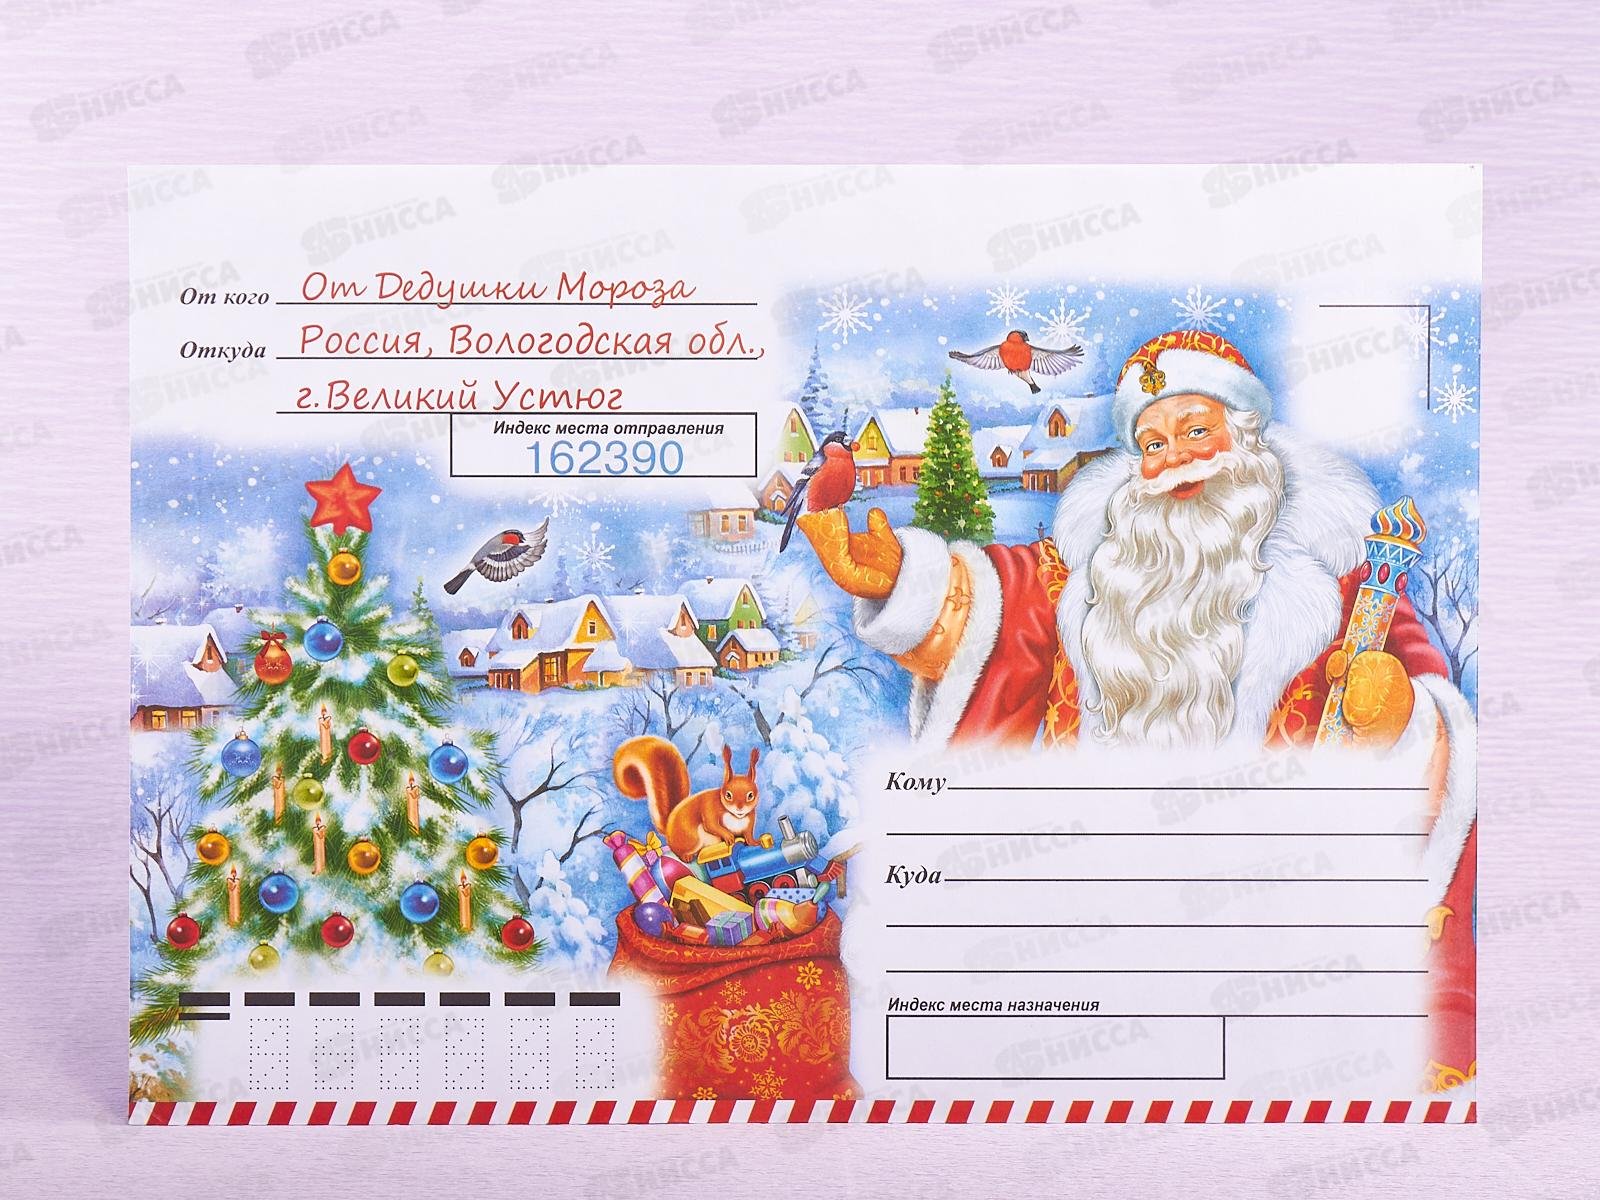 Подписать подарки детям. Конверт подарок от Деда Мороза. Конверт от Деда Мороза ребенку. Конверт посылка от Деда Мороза. Письмо от Деда Мороза конверт.